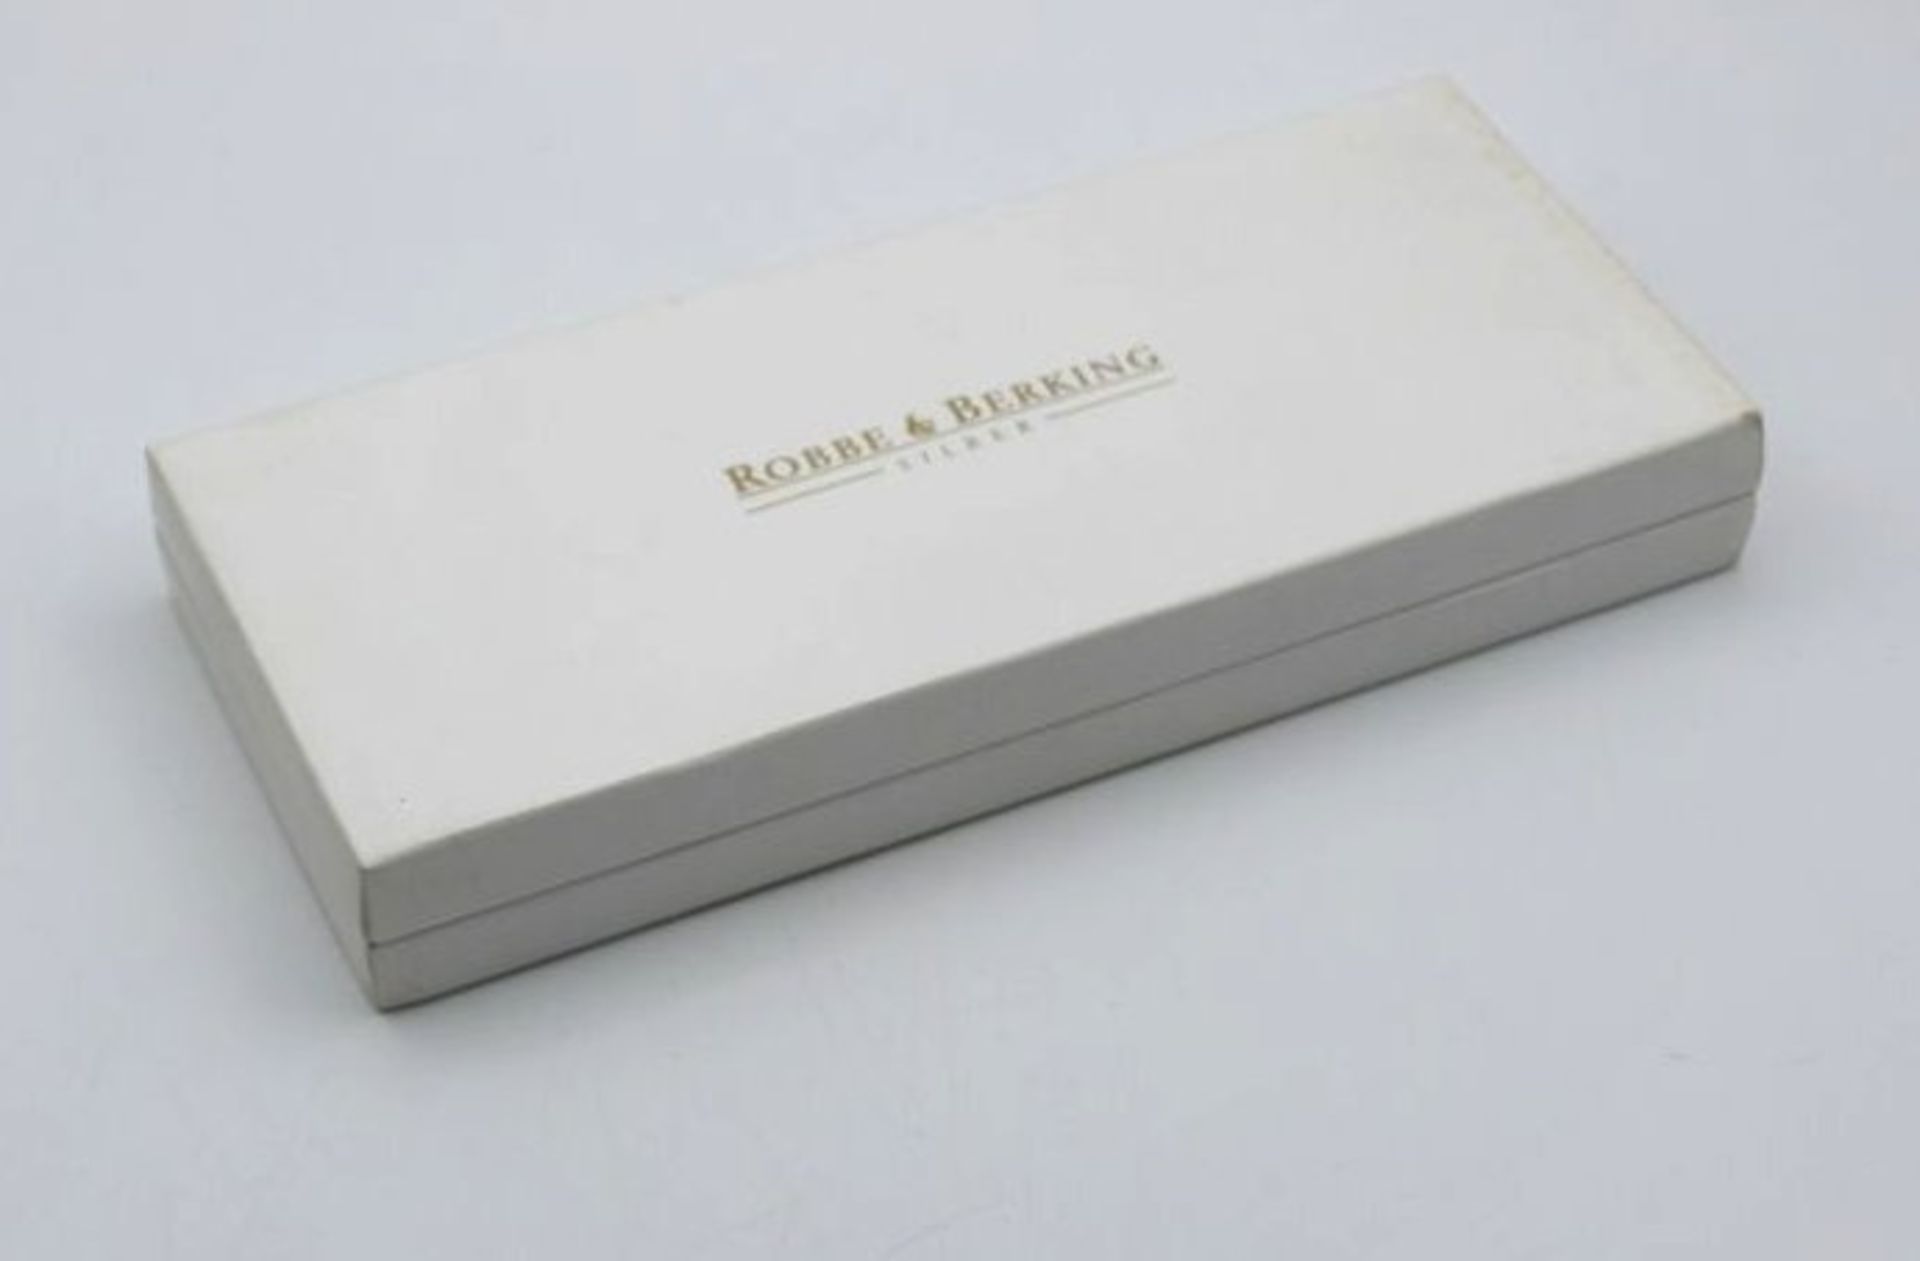 Jahreslöffel, Robbe und Berking, 925er Silber vergoldet und emailliert, 1986, orig. Schachtel, L- - Bild 3 aus 3